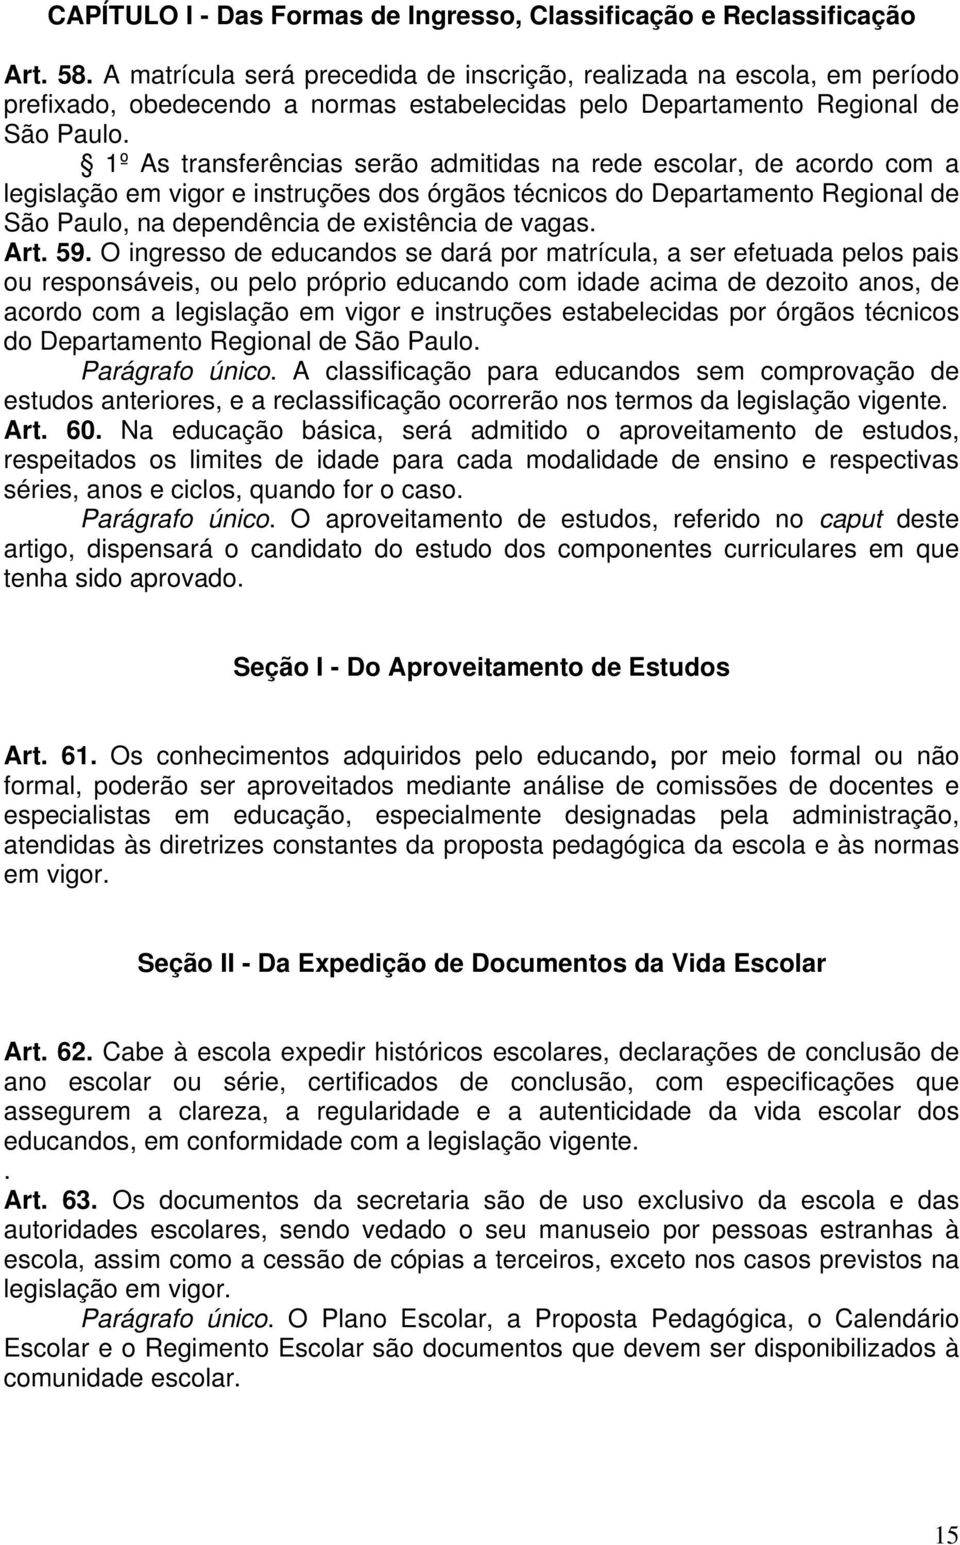 1º As transferências serão admitidas na rede escolar, de acordo com a legislação em vigor e instruções dos órgãos técnicos do Departamento Regional de São Paulo, na dependência de existência de vagas.